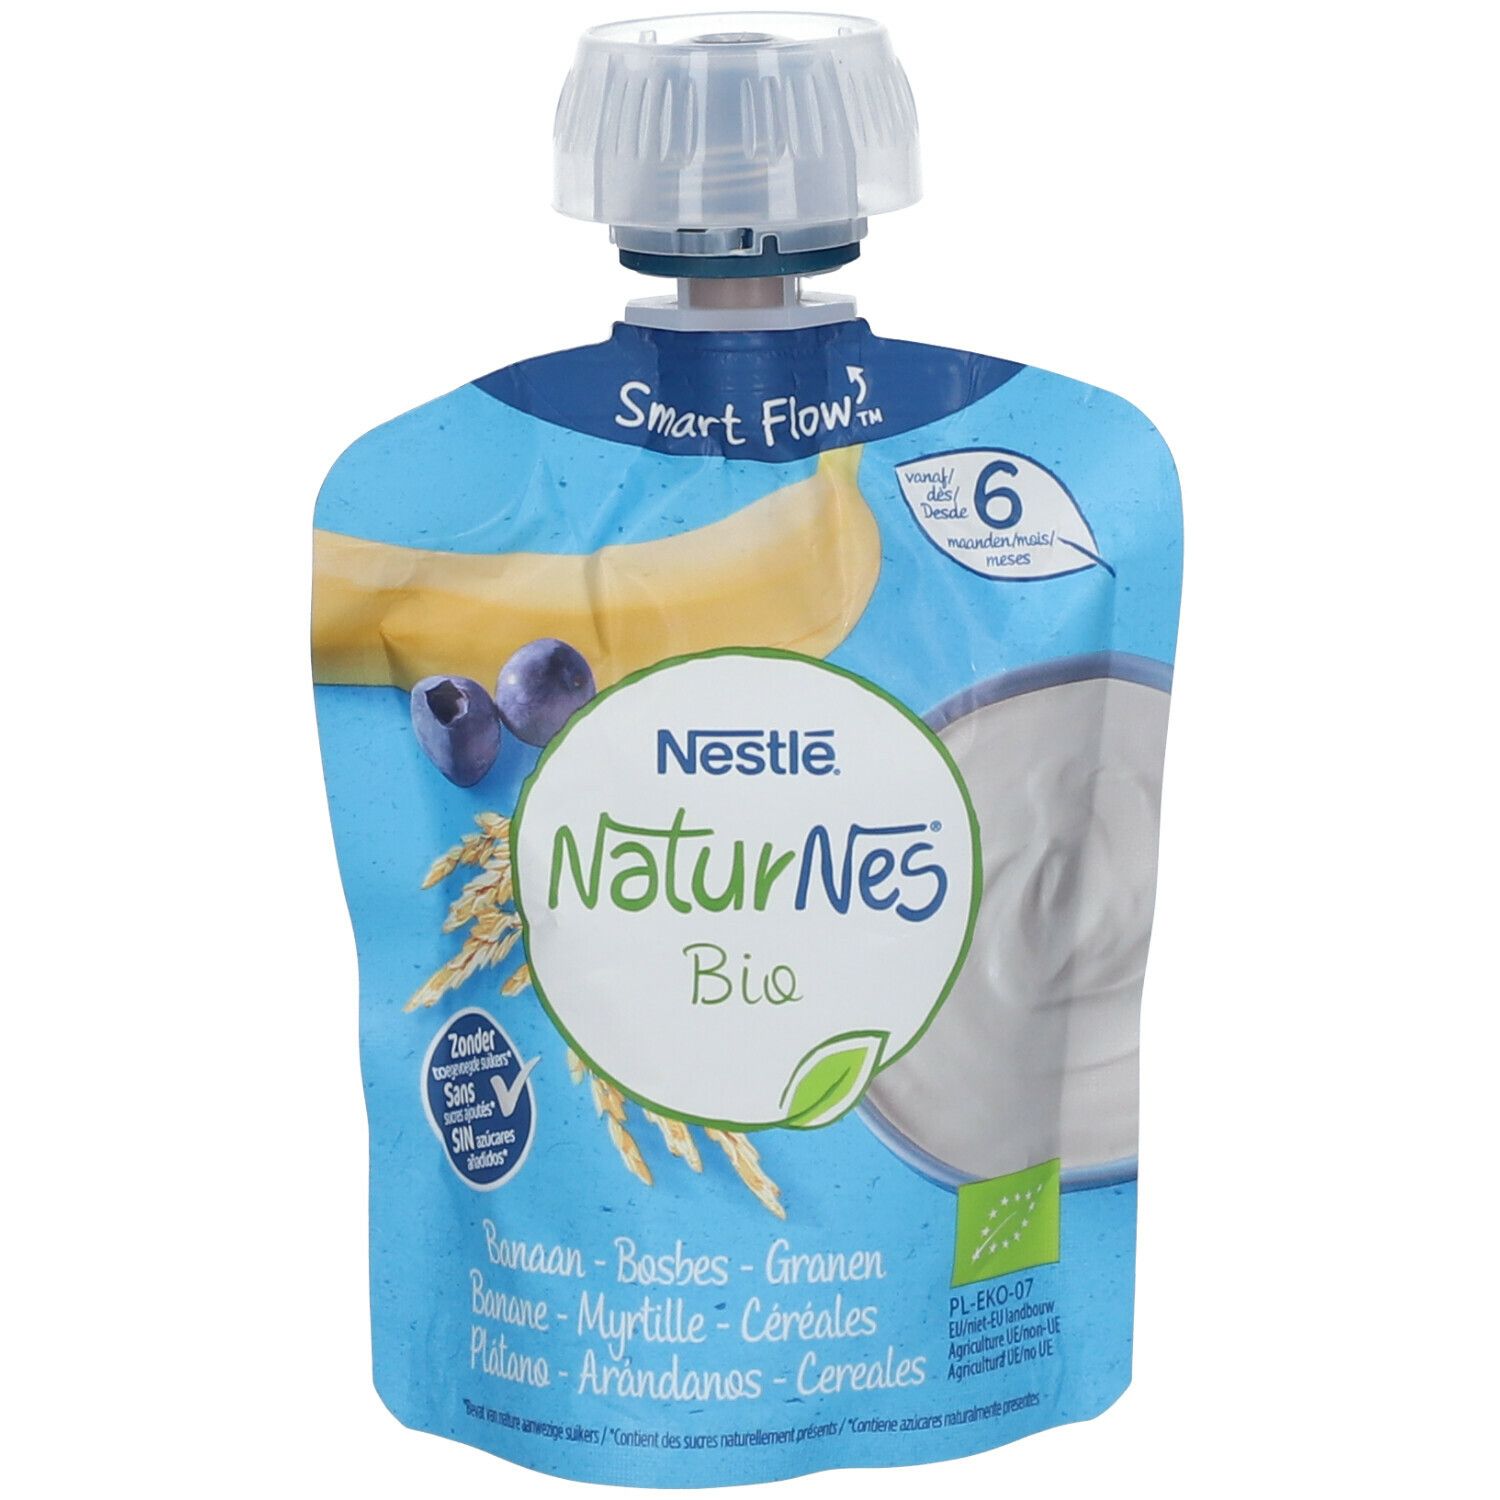 Nestlé NaturNes Bio Yaourt Banane - Myrtille - Céréales 6 Moins